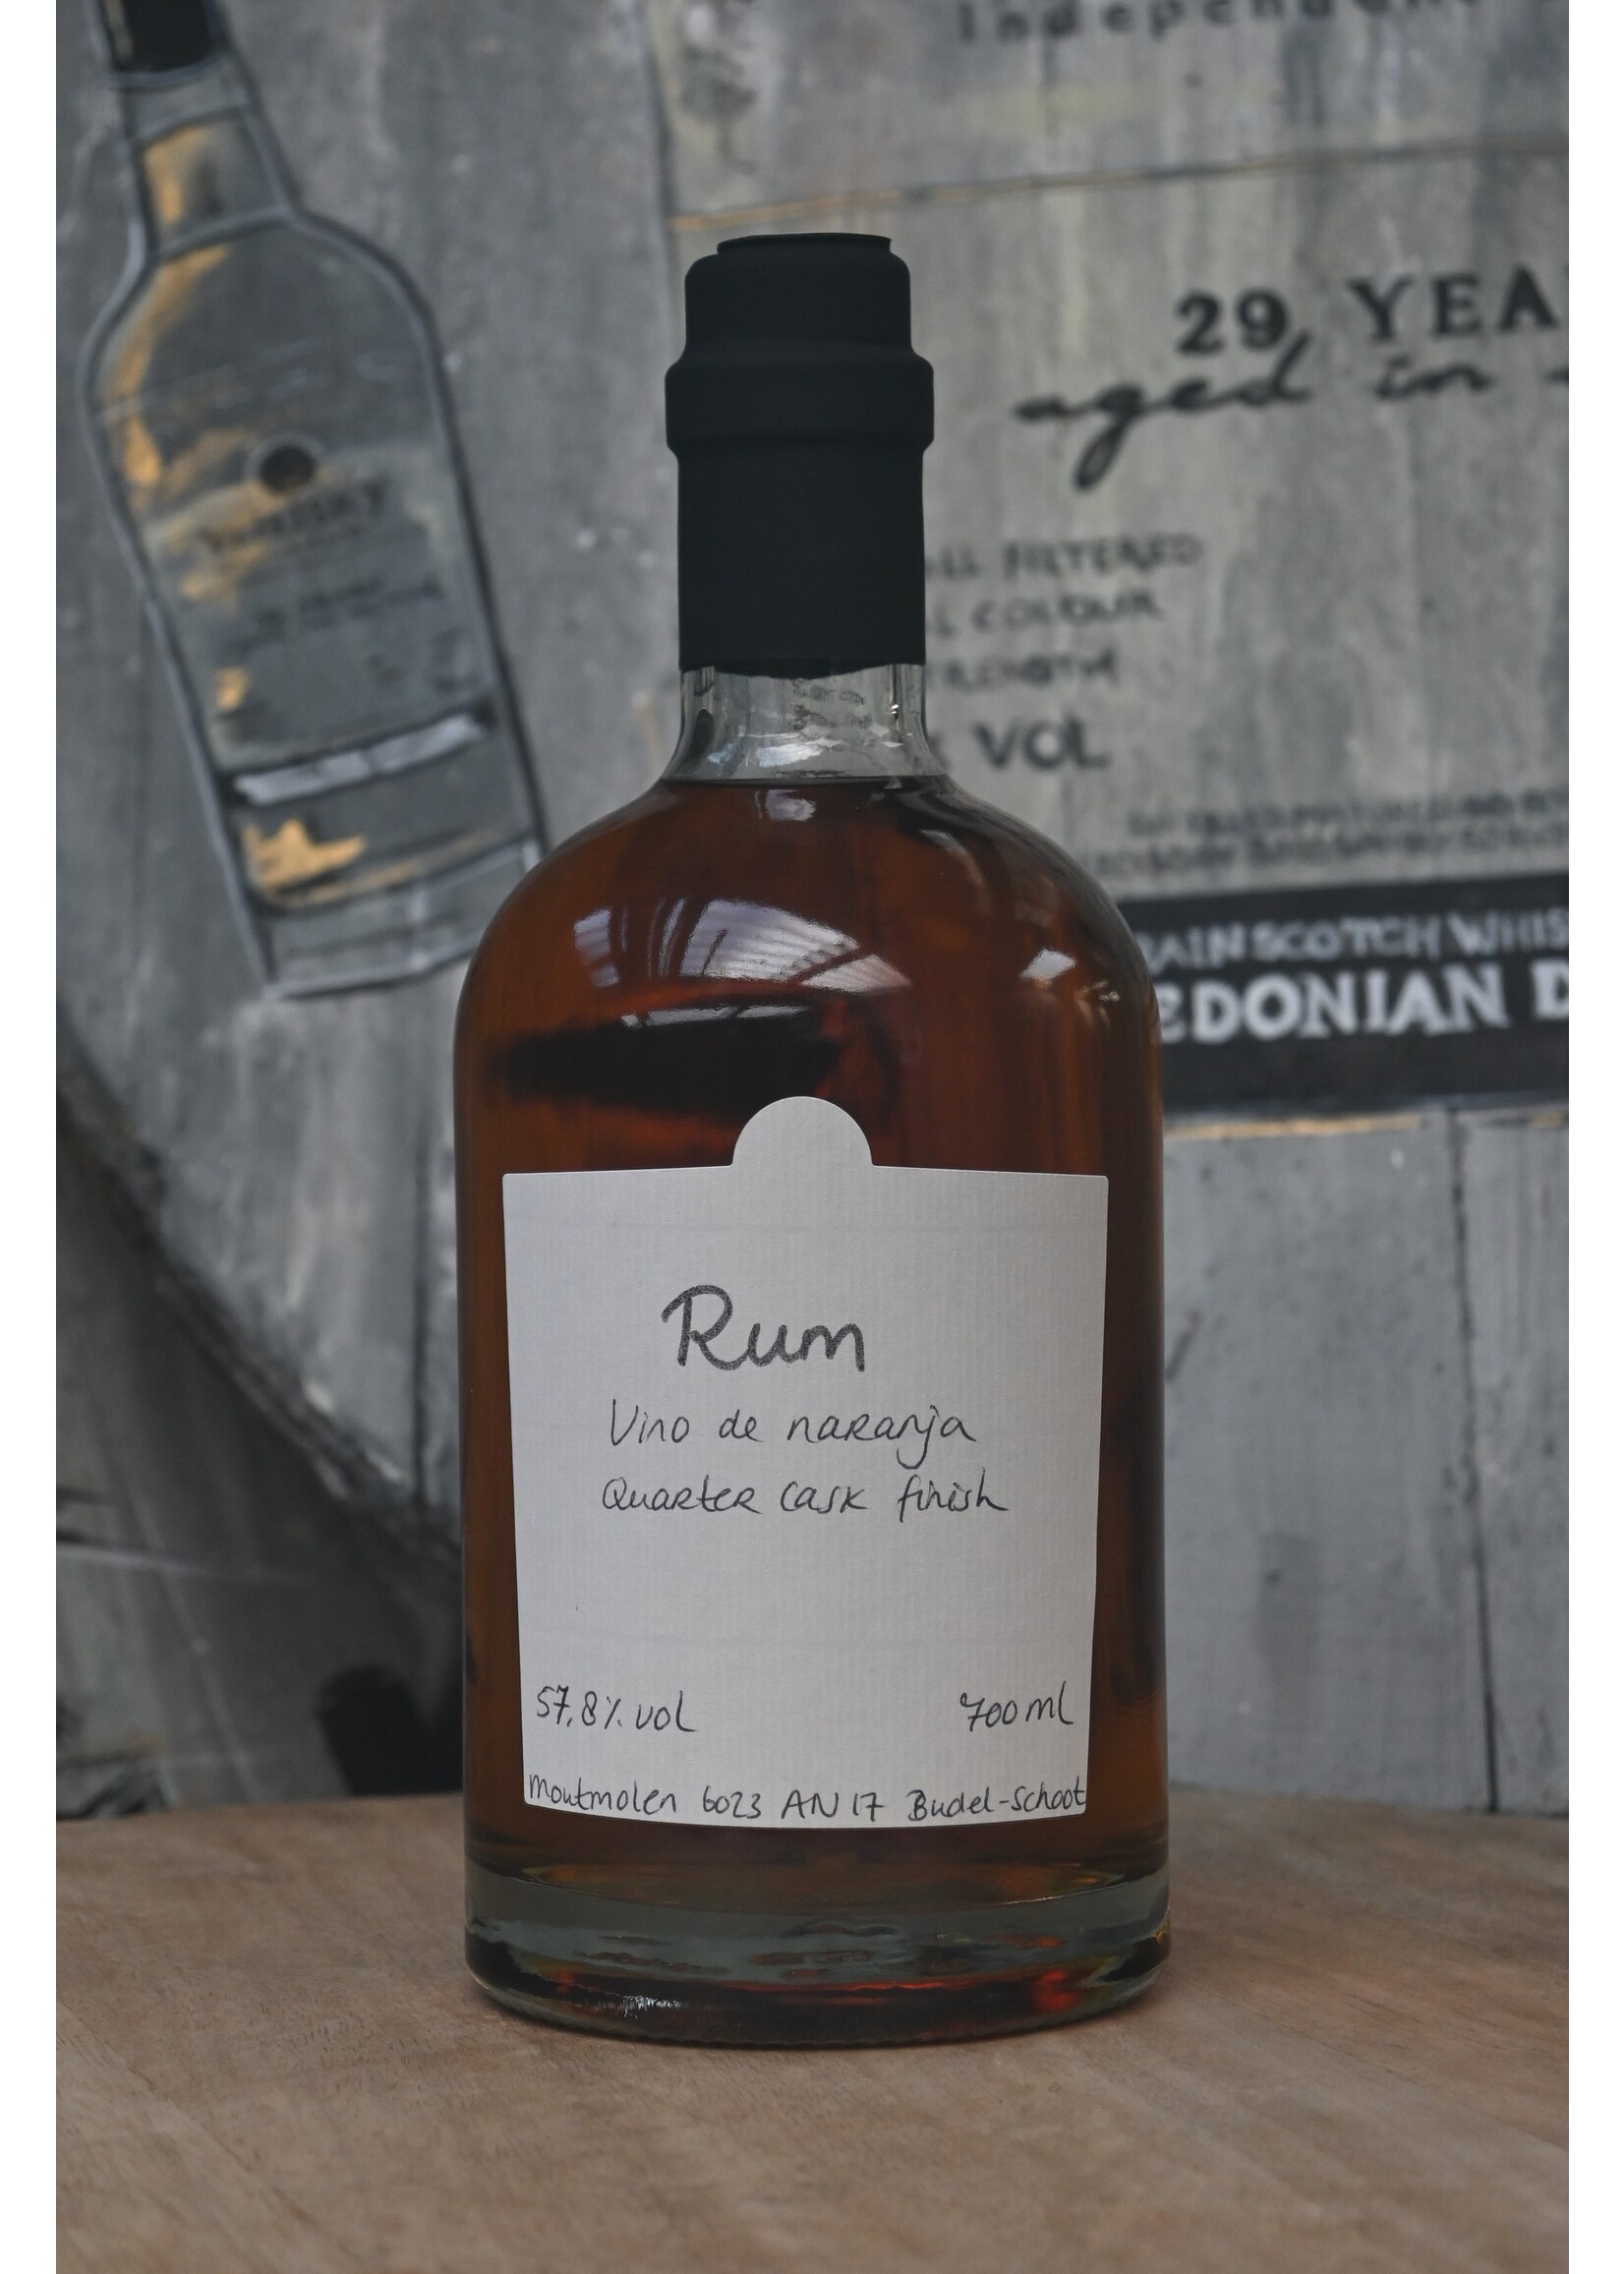 Moutmolen Rum - Vino de Naranja Quarter Cask